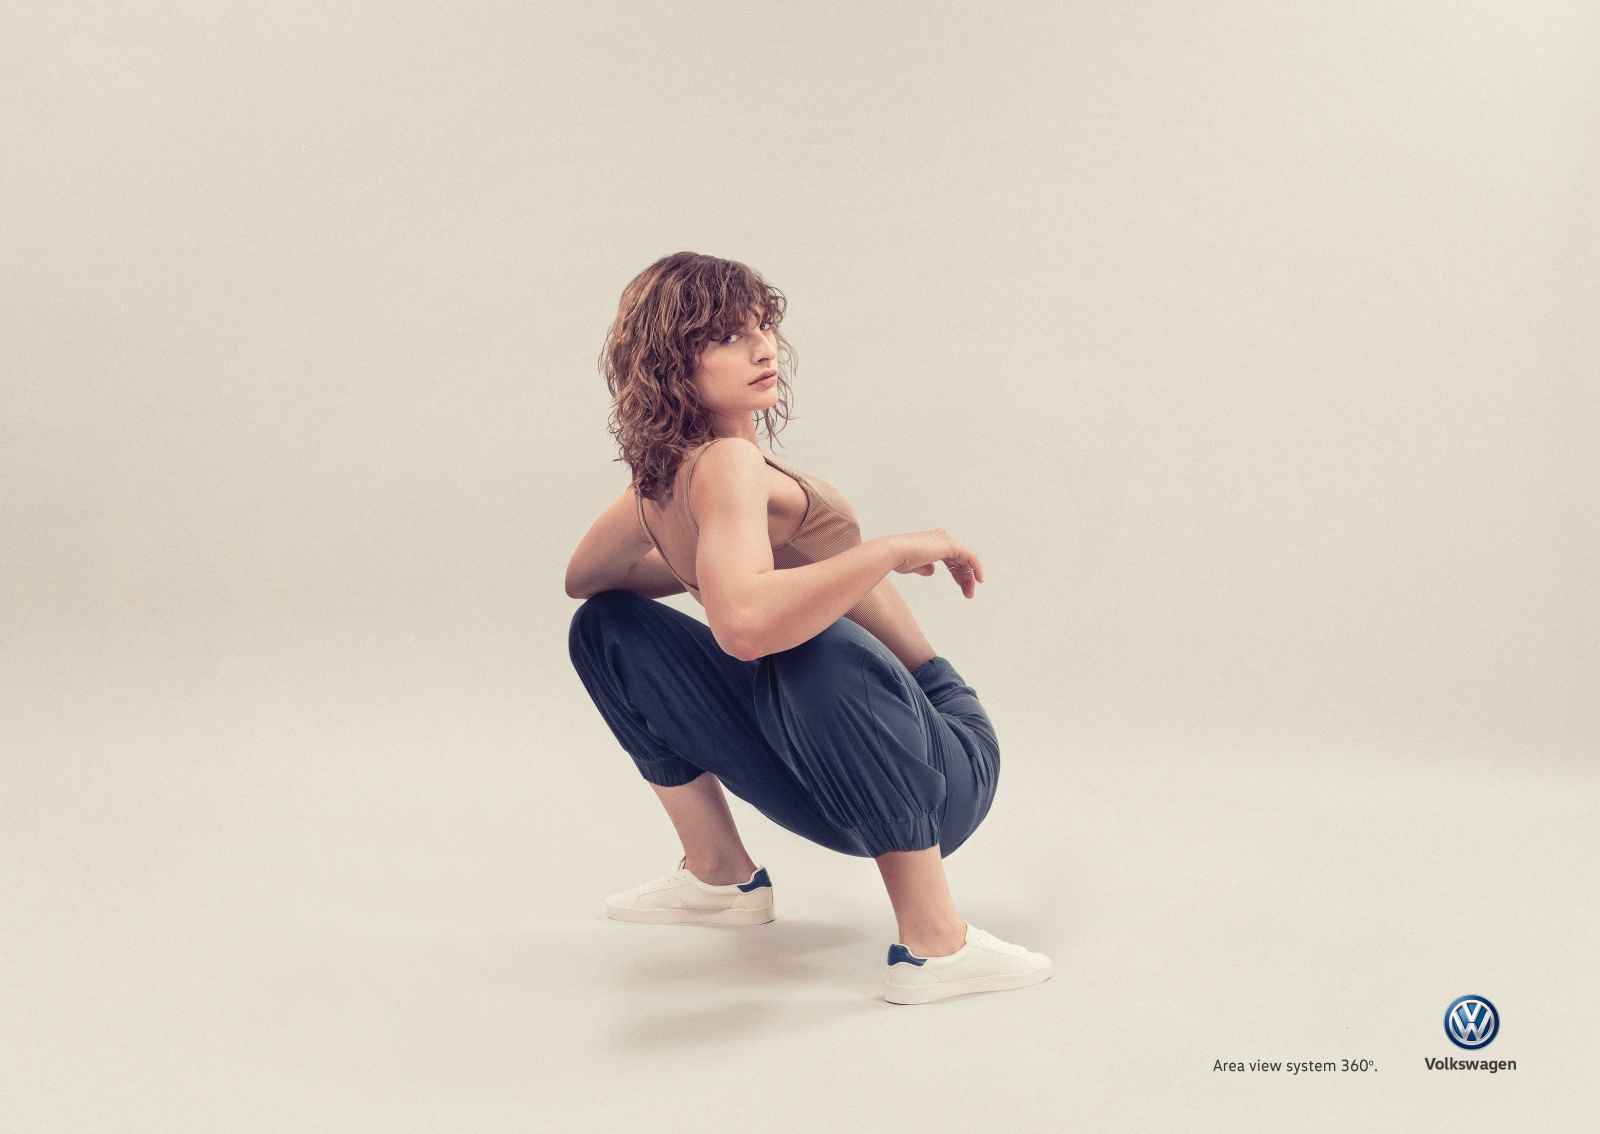 Portada de “Yoga”, campaña de DDB México para Volkswagen